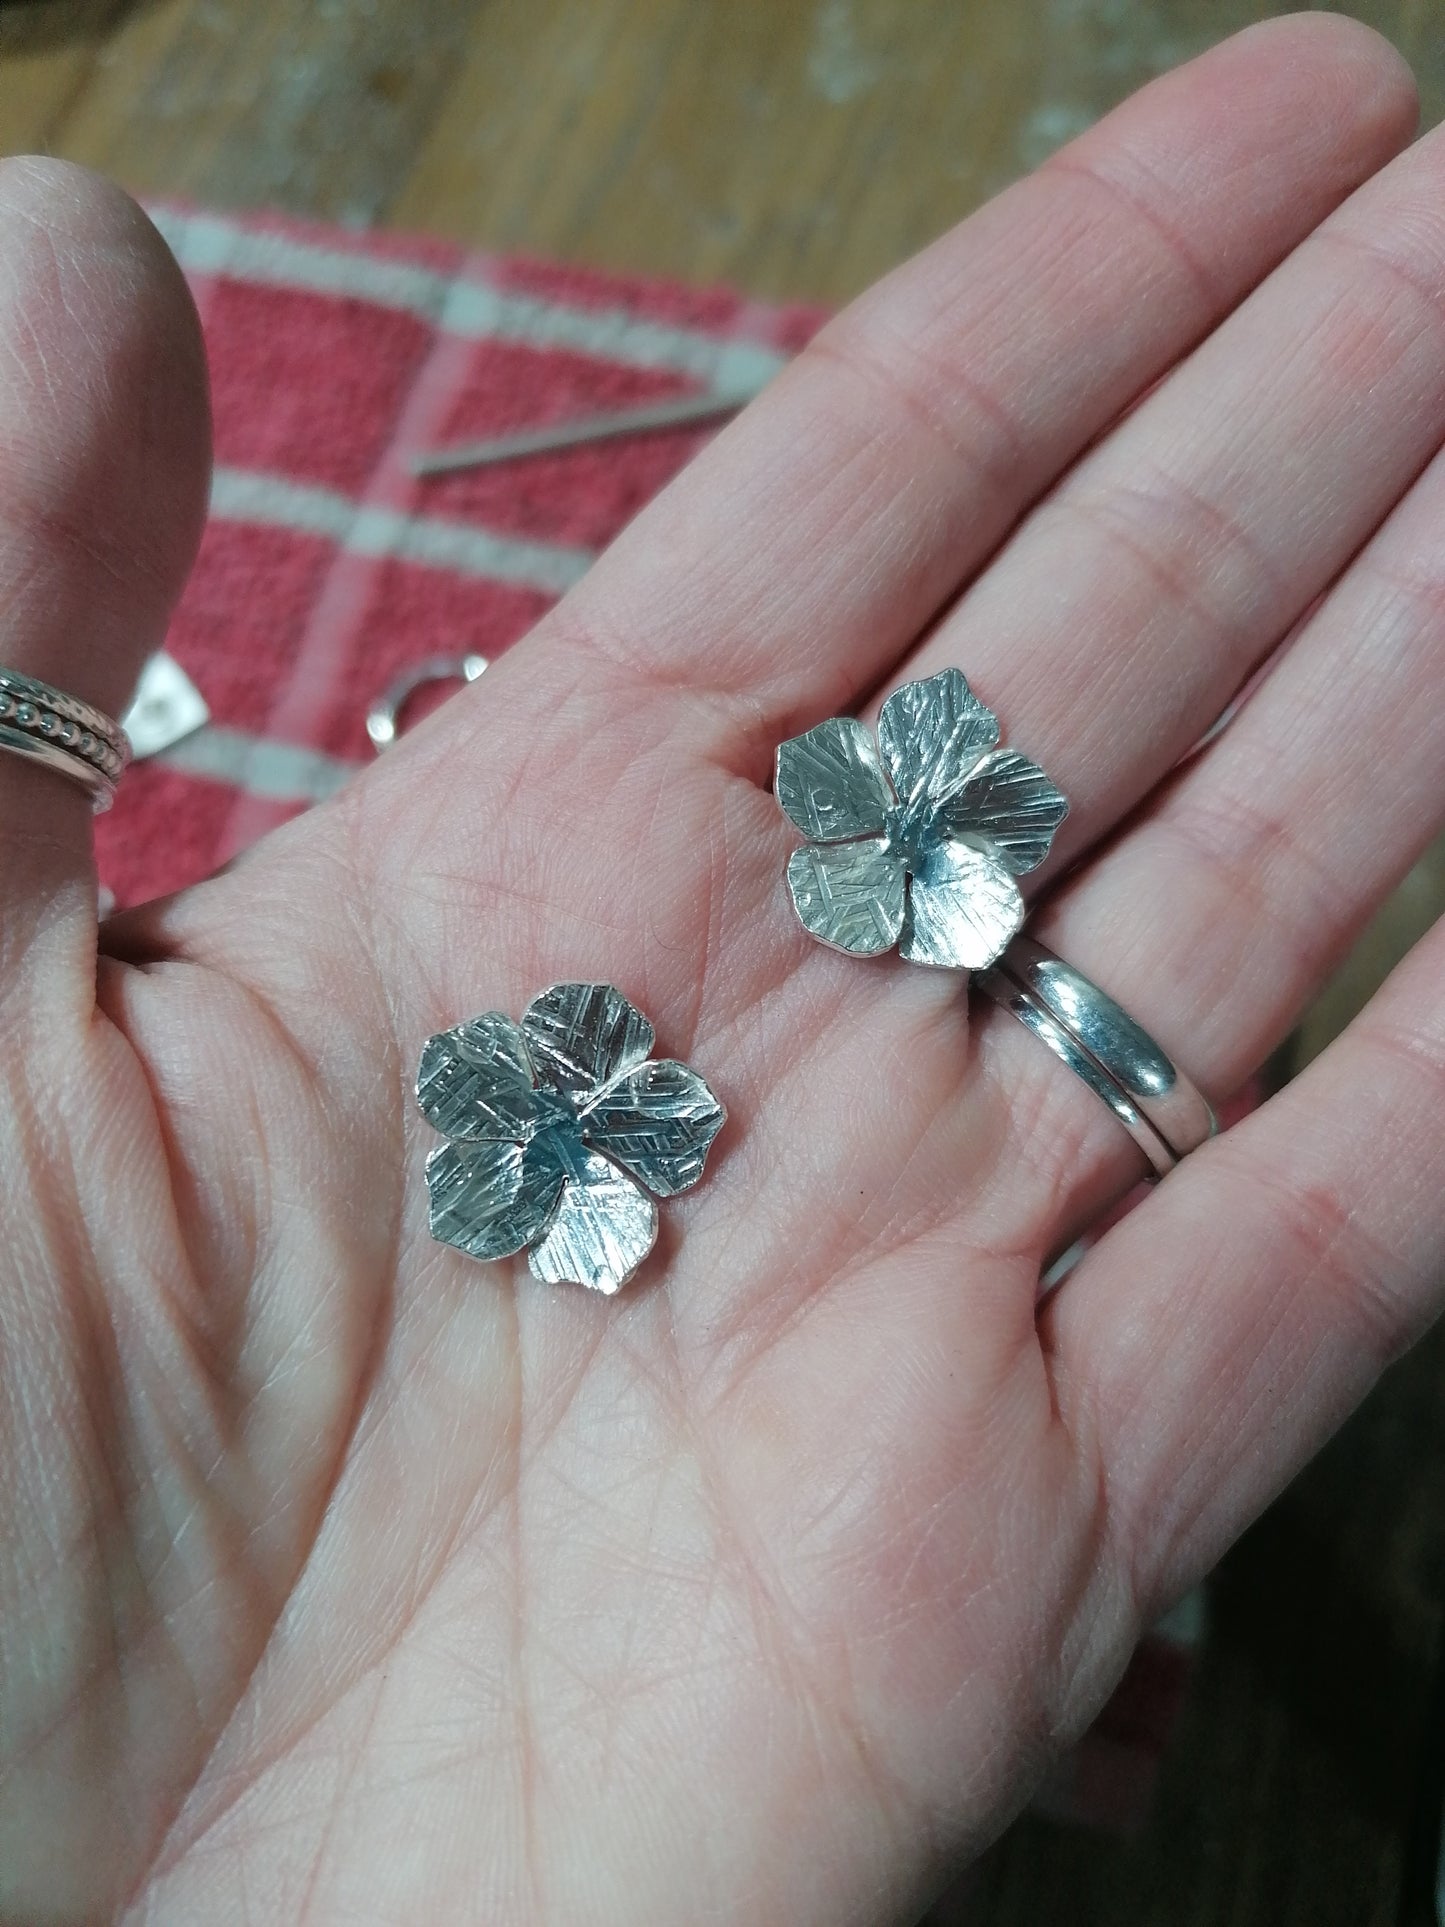 Flower drop earrings in sterling silver.